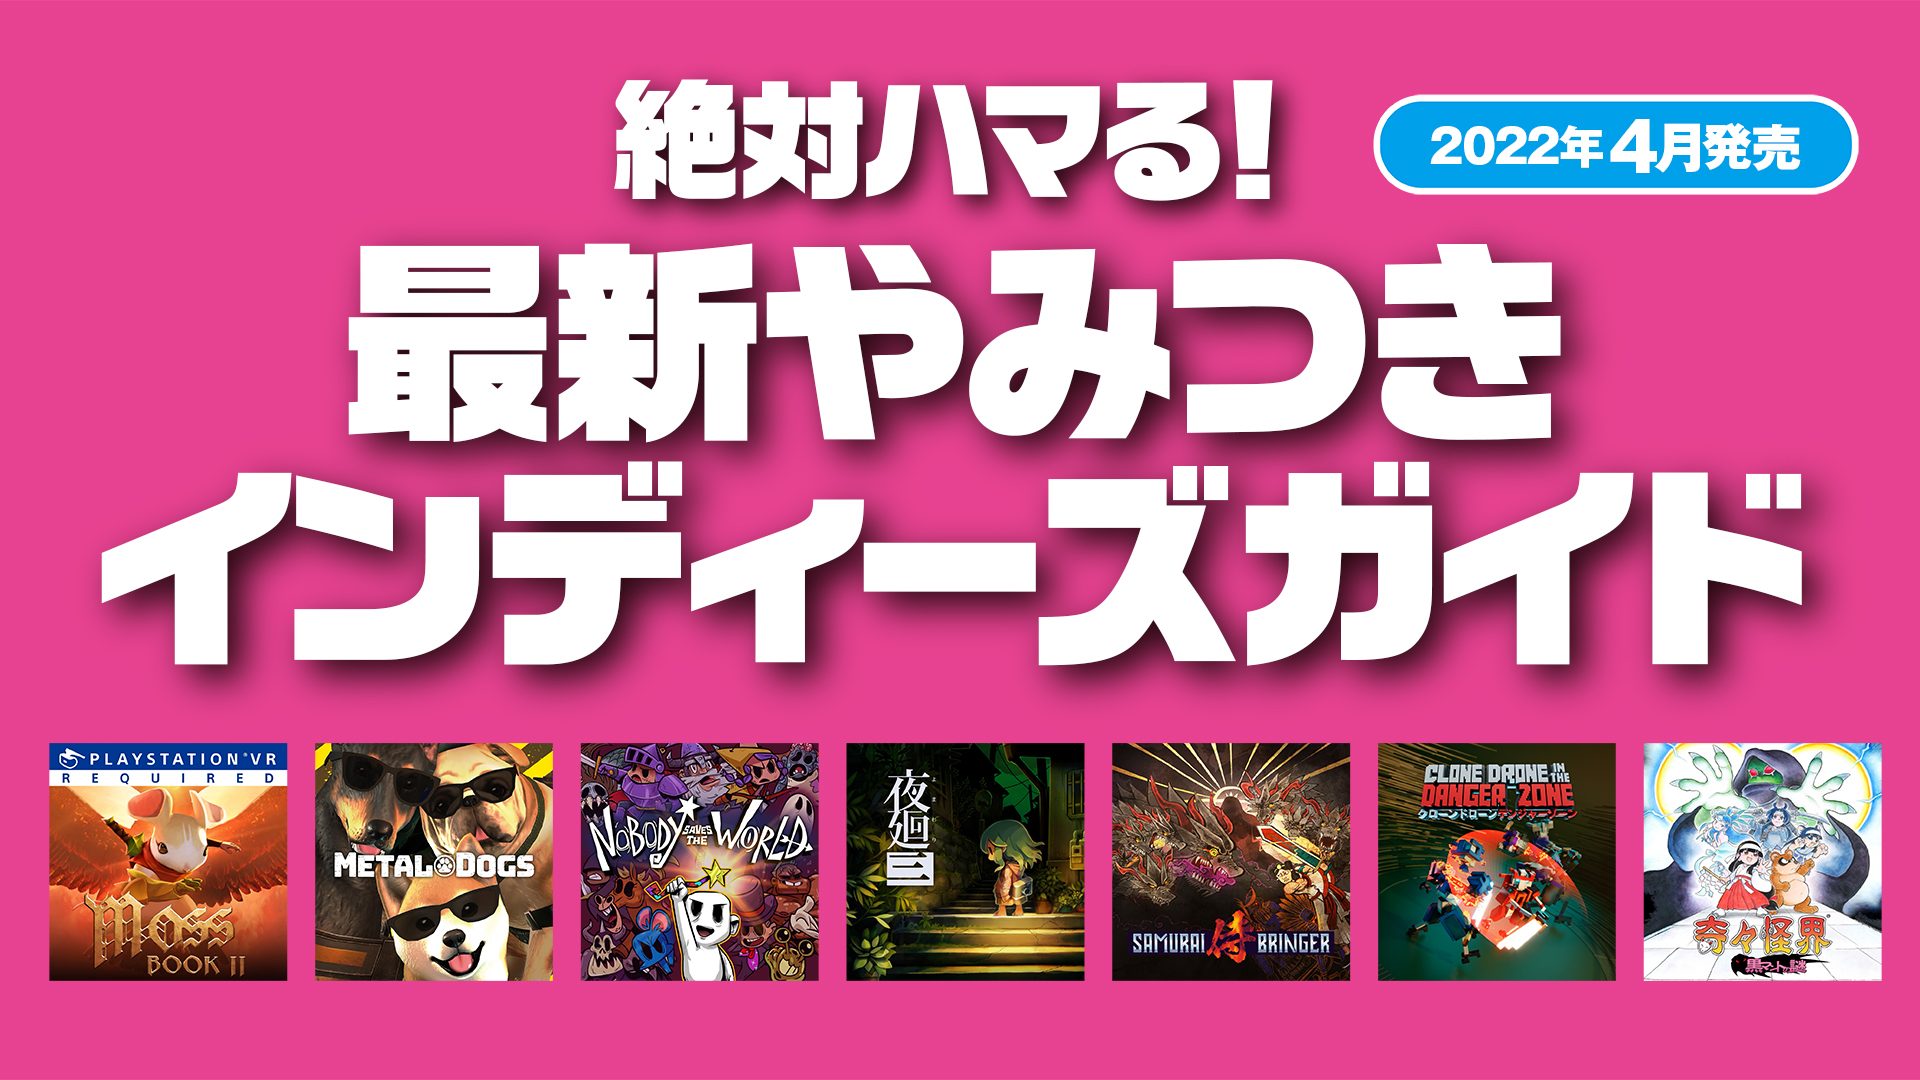 絶対ハマる 最新やみつきインディーズガイド 22年4月発売 Playstation Blog 日本語